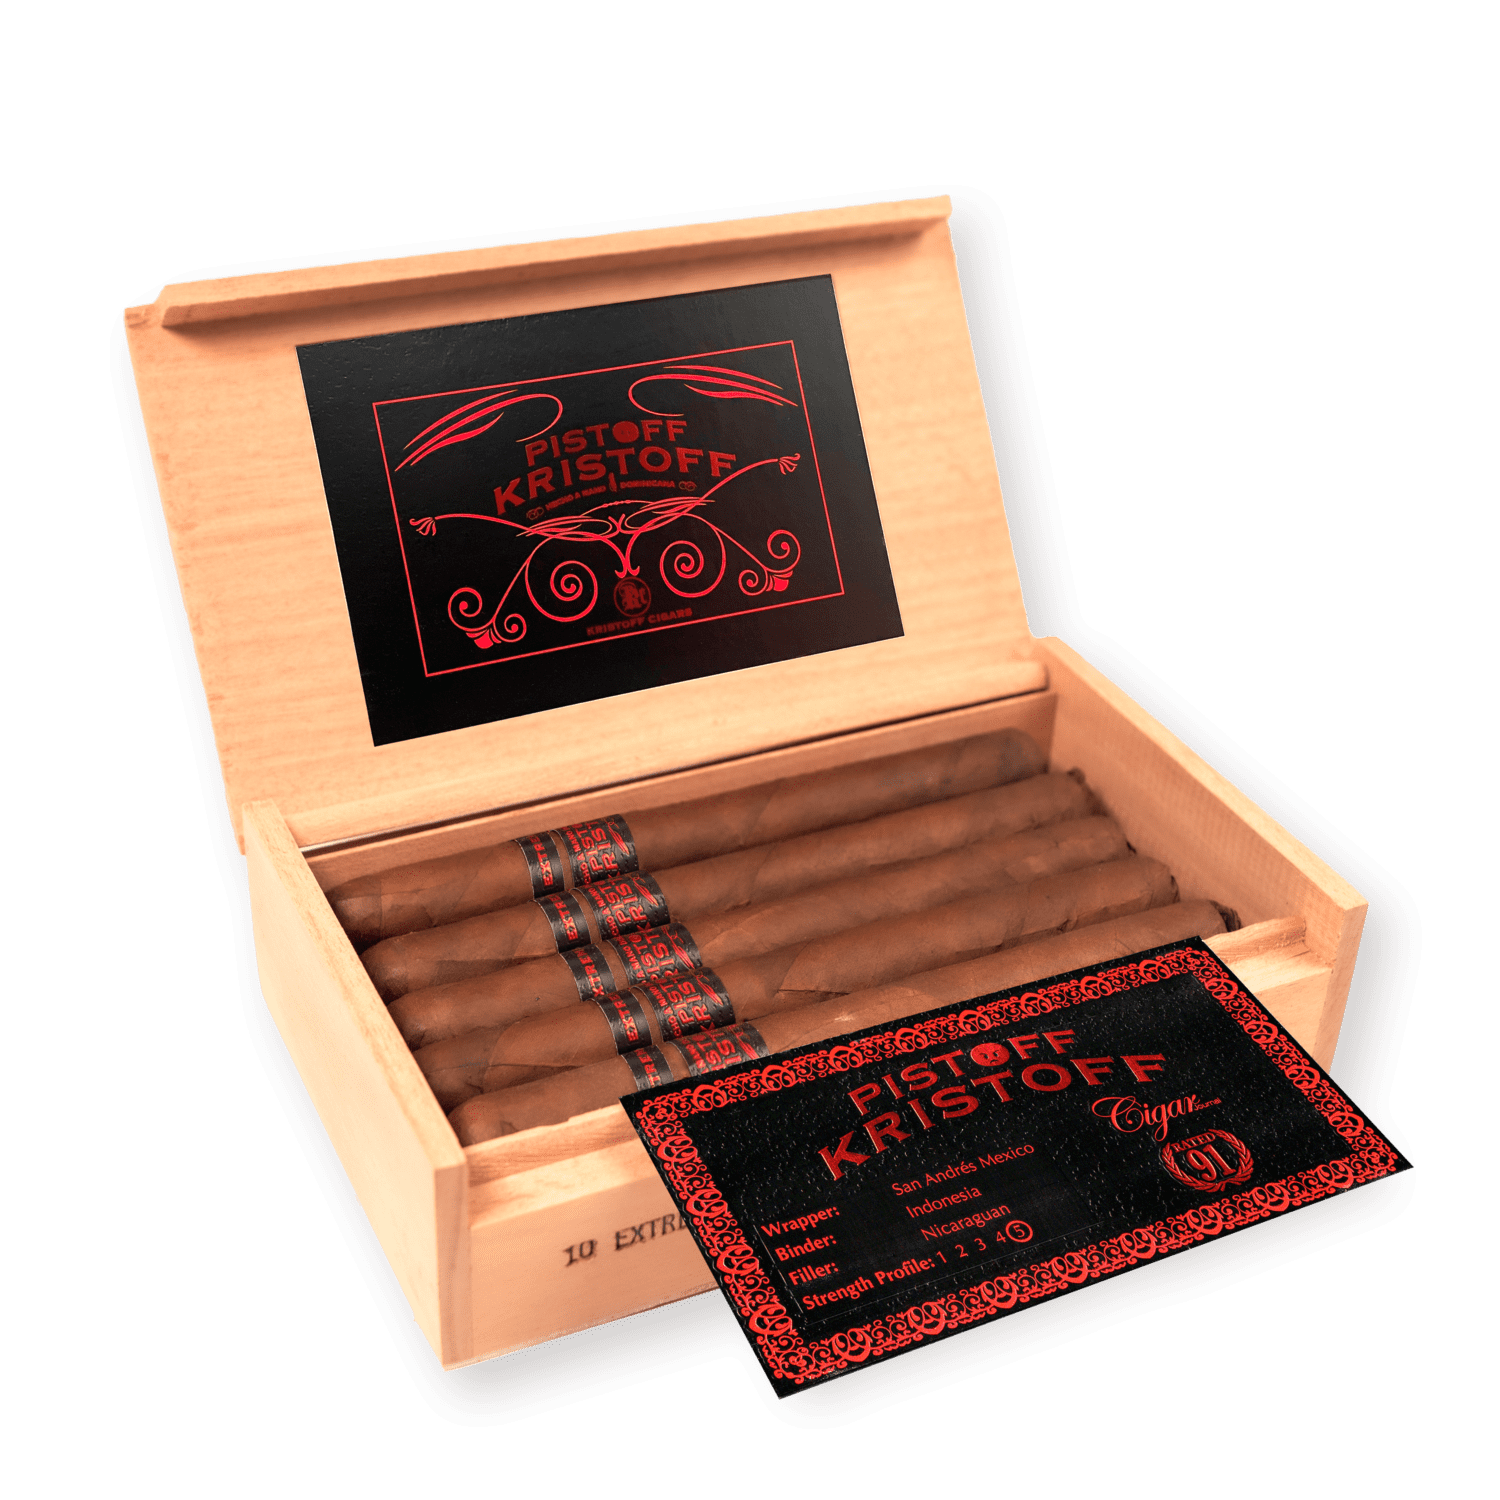 Kristoff Cigars: Pistoff Kristoff Premium Cigar